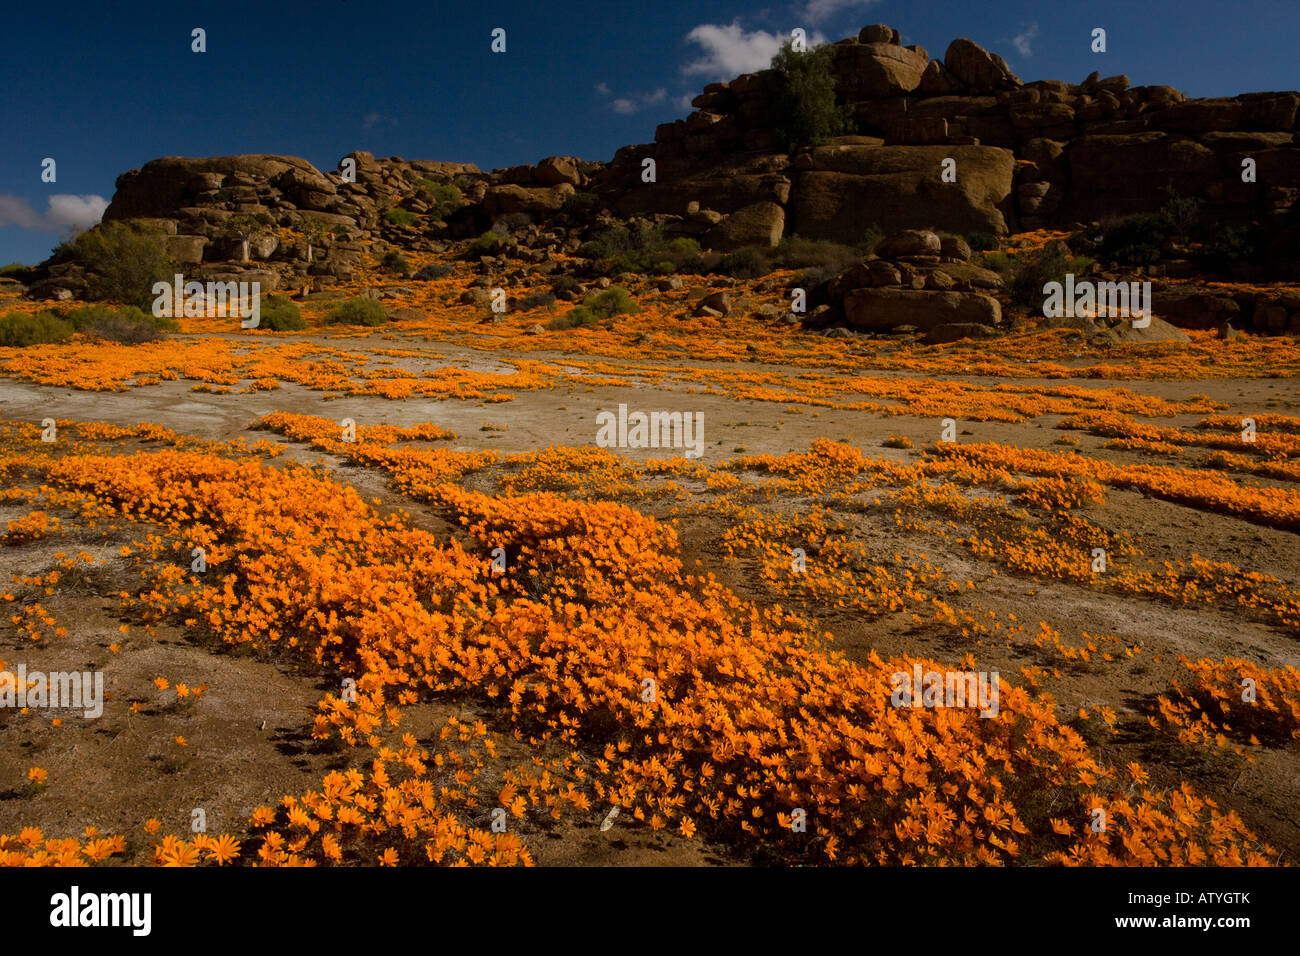 A spectacular orange daisy en masse (Ursinia cakilefolia) around Nababeep in Namaqualand, North Cape, South Africa Stock Photo